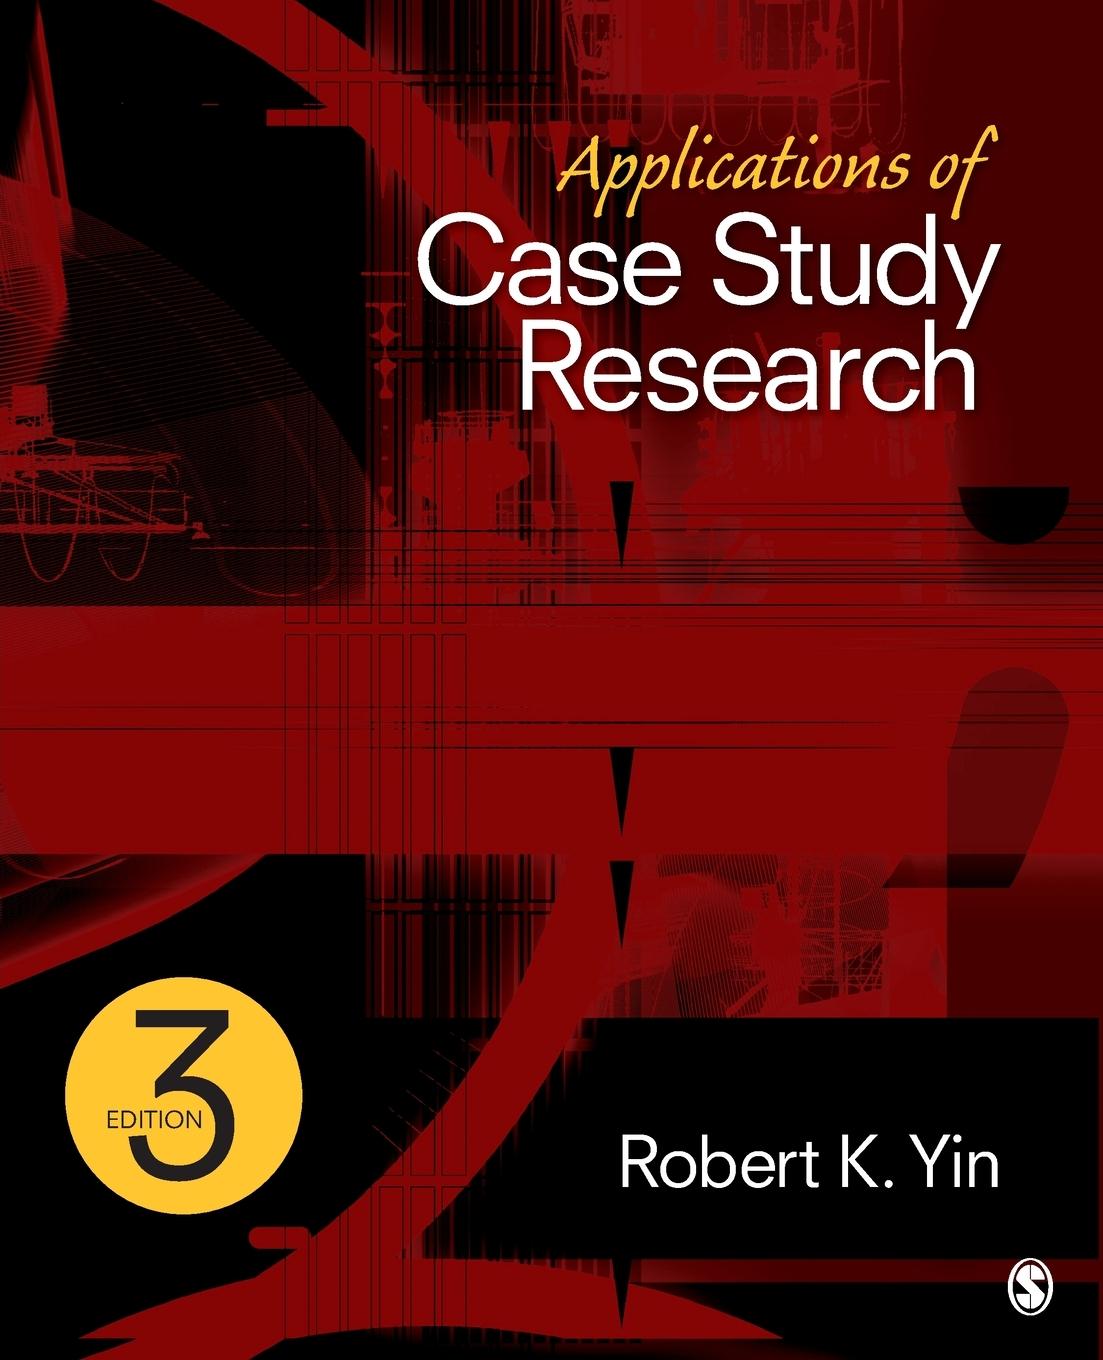 Applications of Case Study Research / Robert K. Yin / Taschenbuch / Paperback / Kartoniert / Broschiert / Englisch / 2011 / Sage Publications, Inc / EAN 9781412989169 - Yin, Robert K.